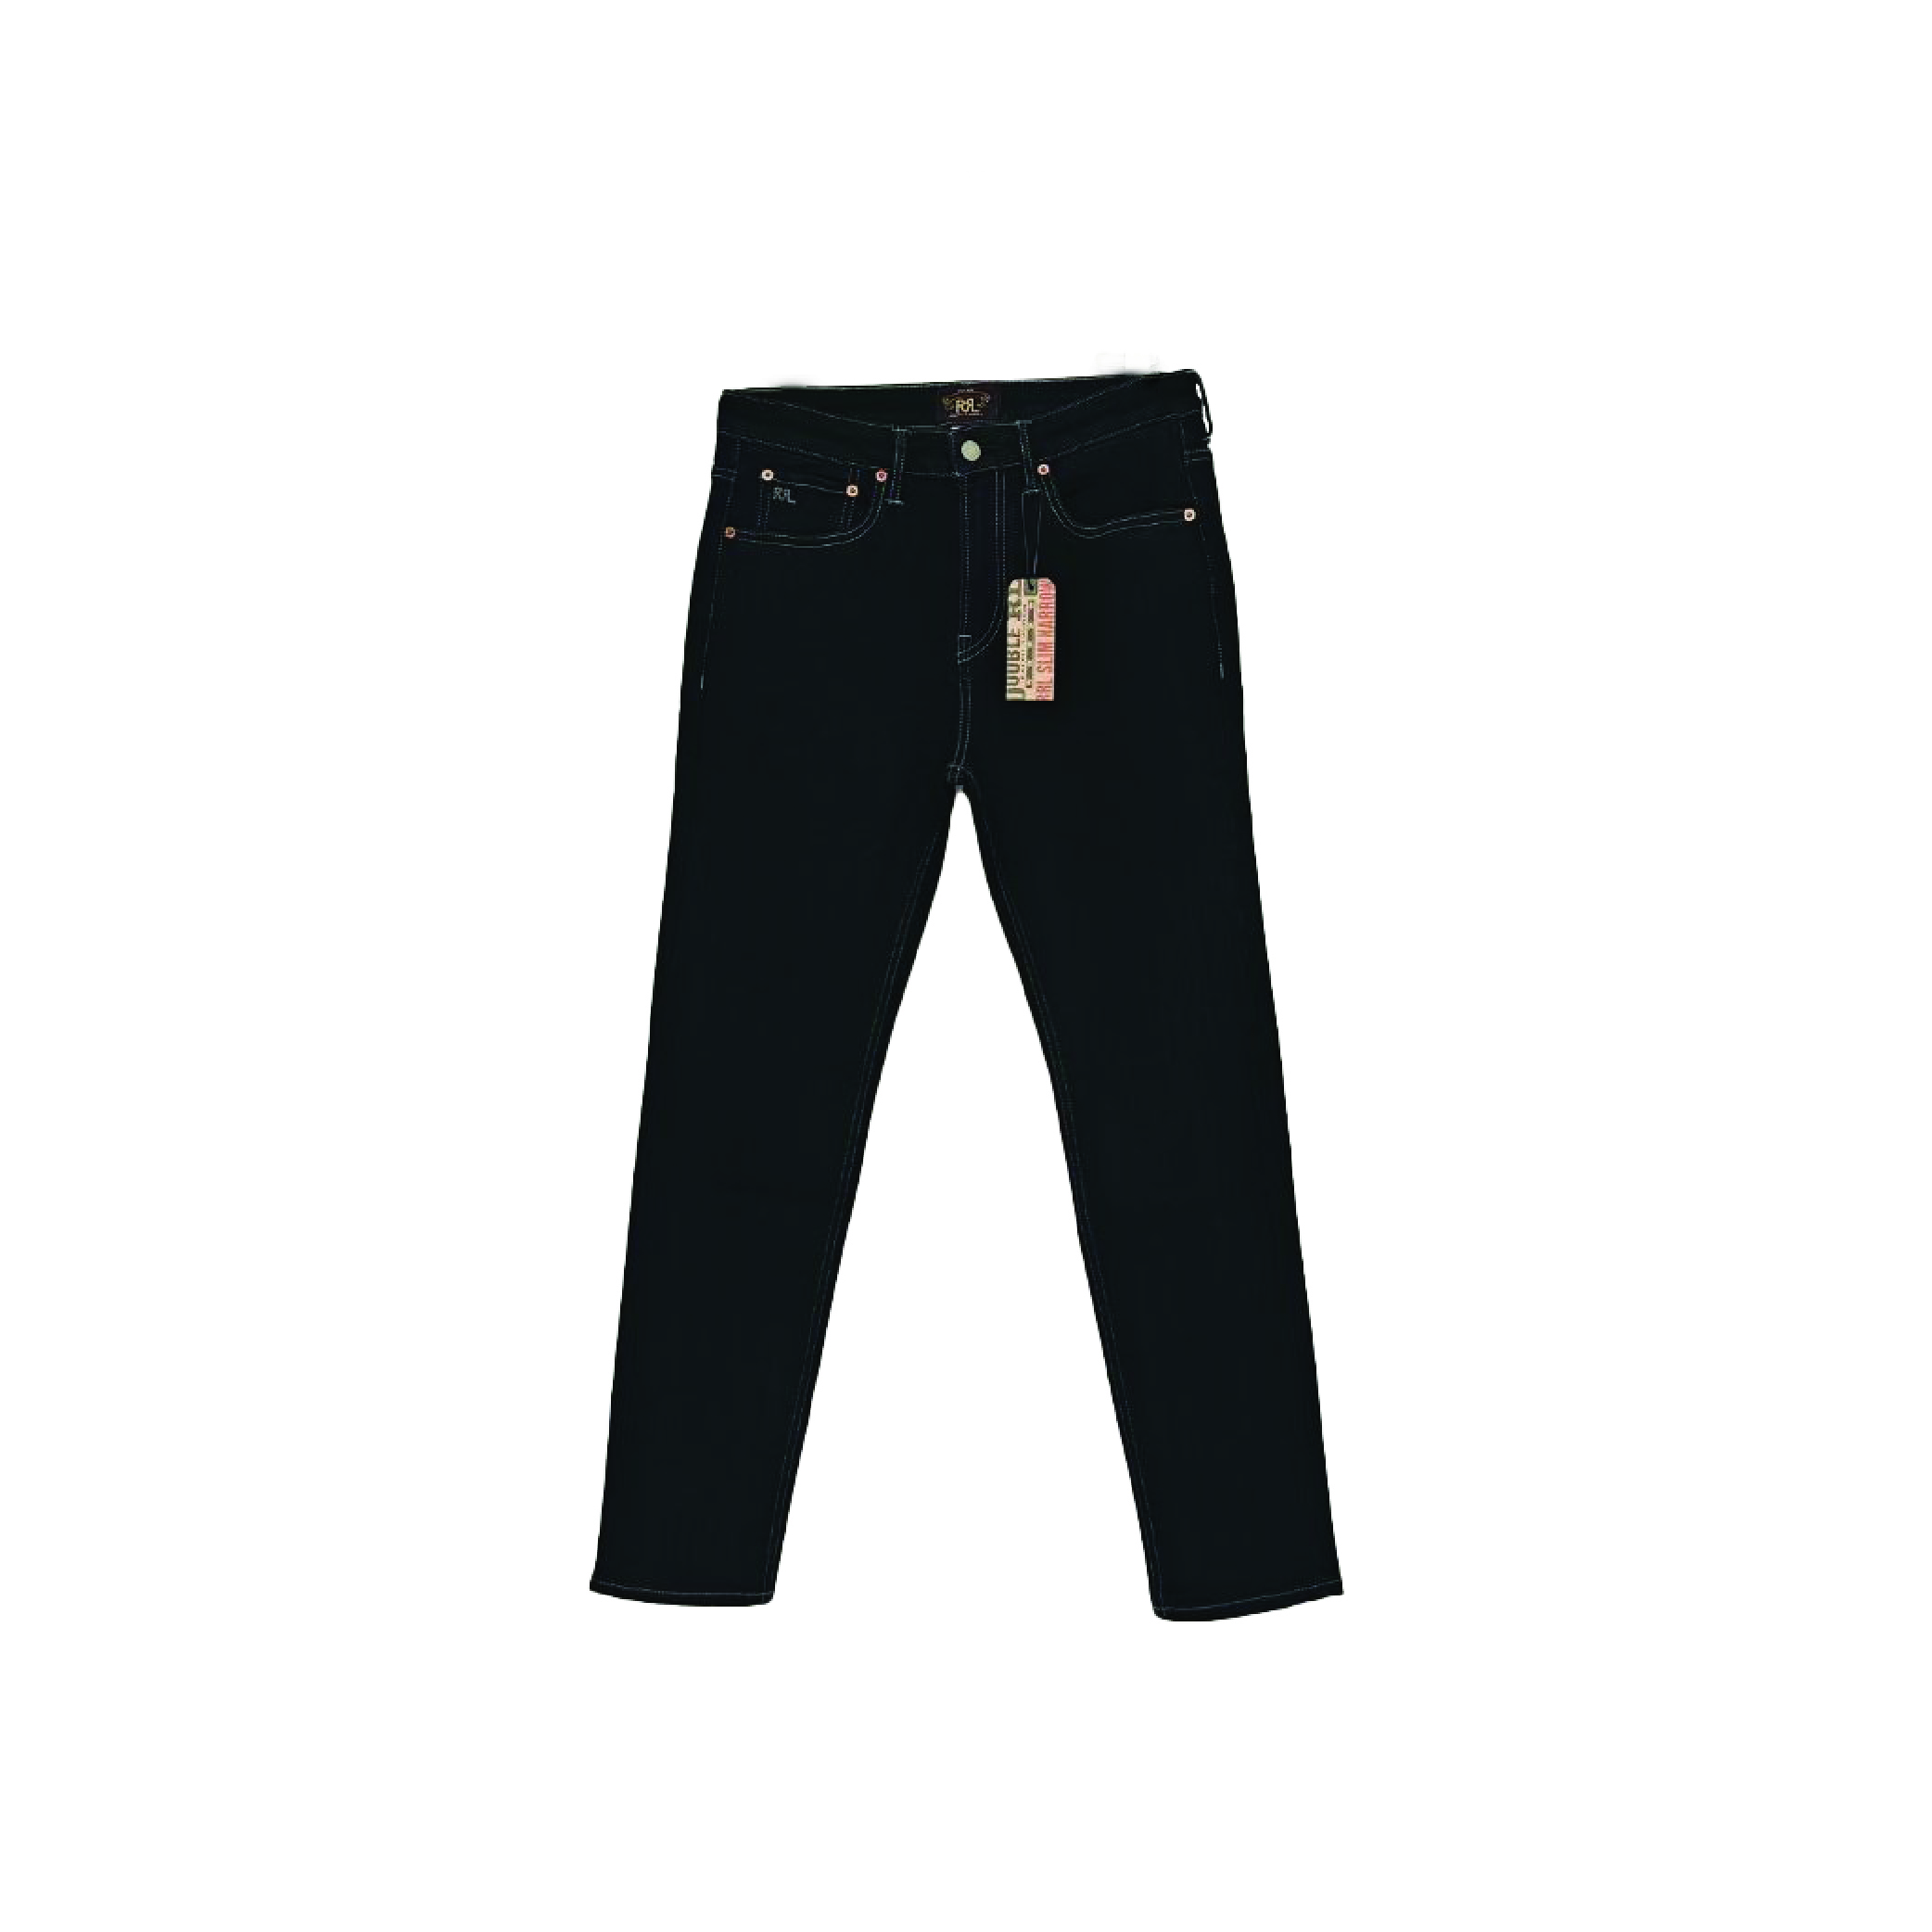 Raph Lauran Jeans2-01